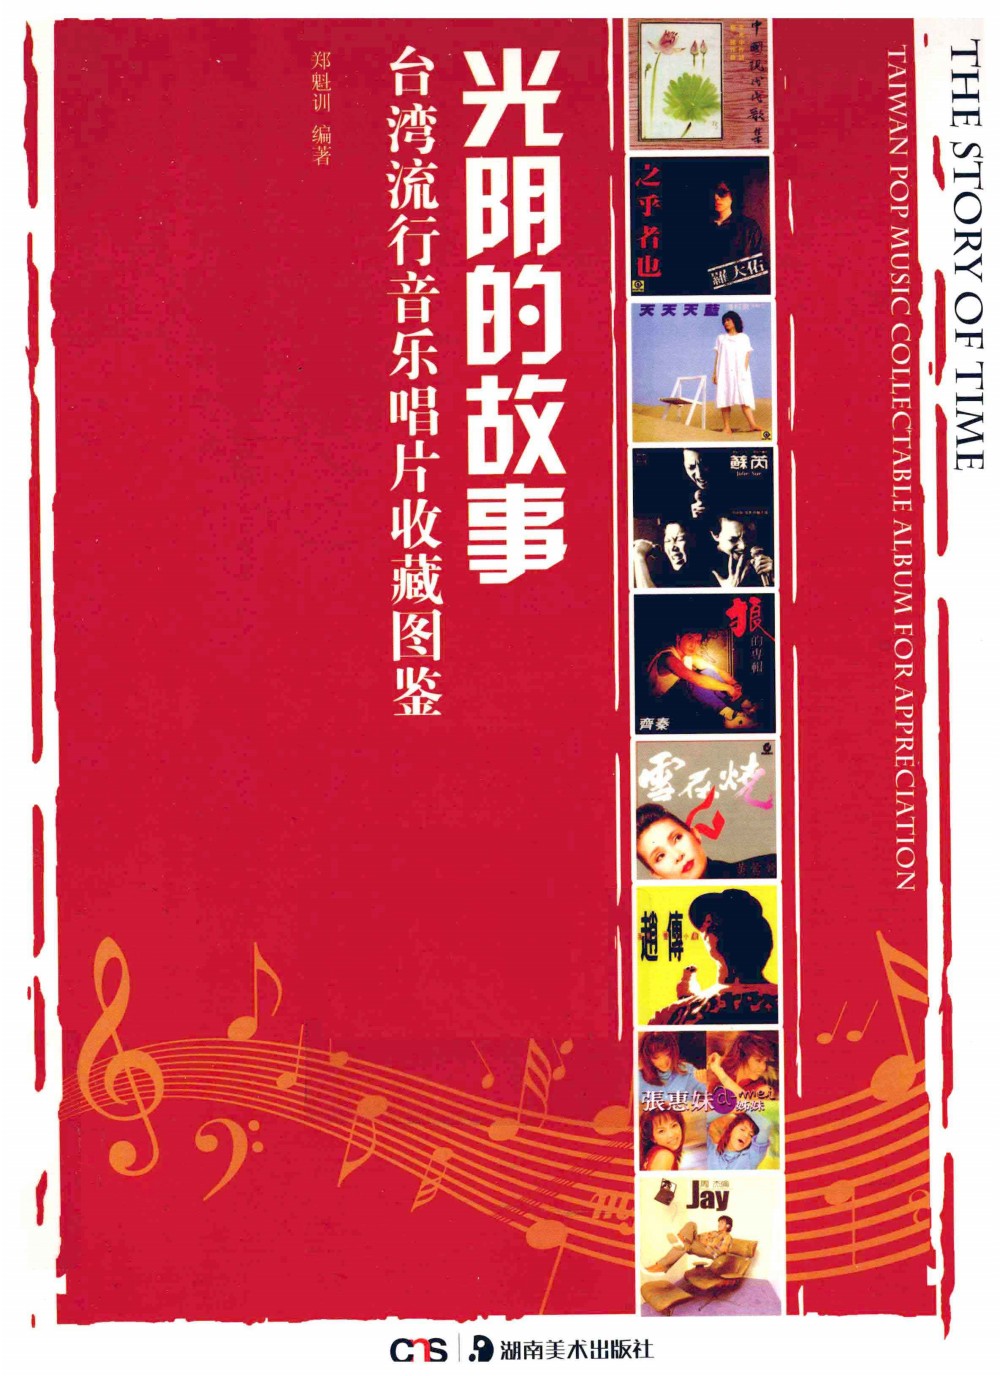 光阴的故事 台湾流行音乐唱片收藏图鉴 (郑魁训) (pdf)